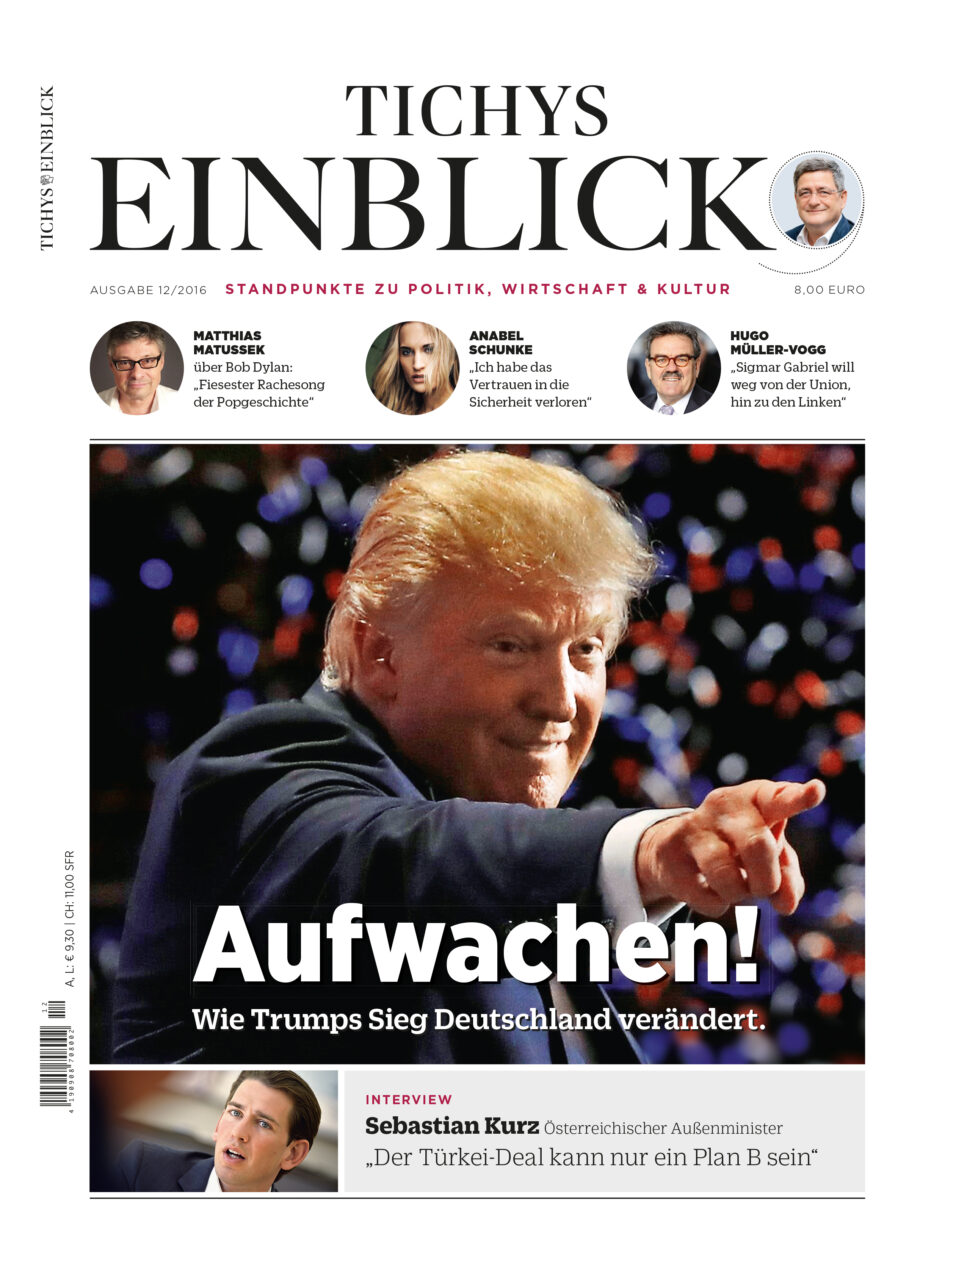 Aufwachen! Wie Trumps Sieg Deutschland verändert